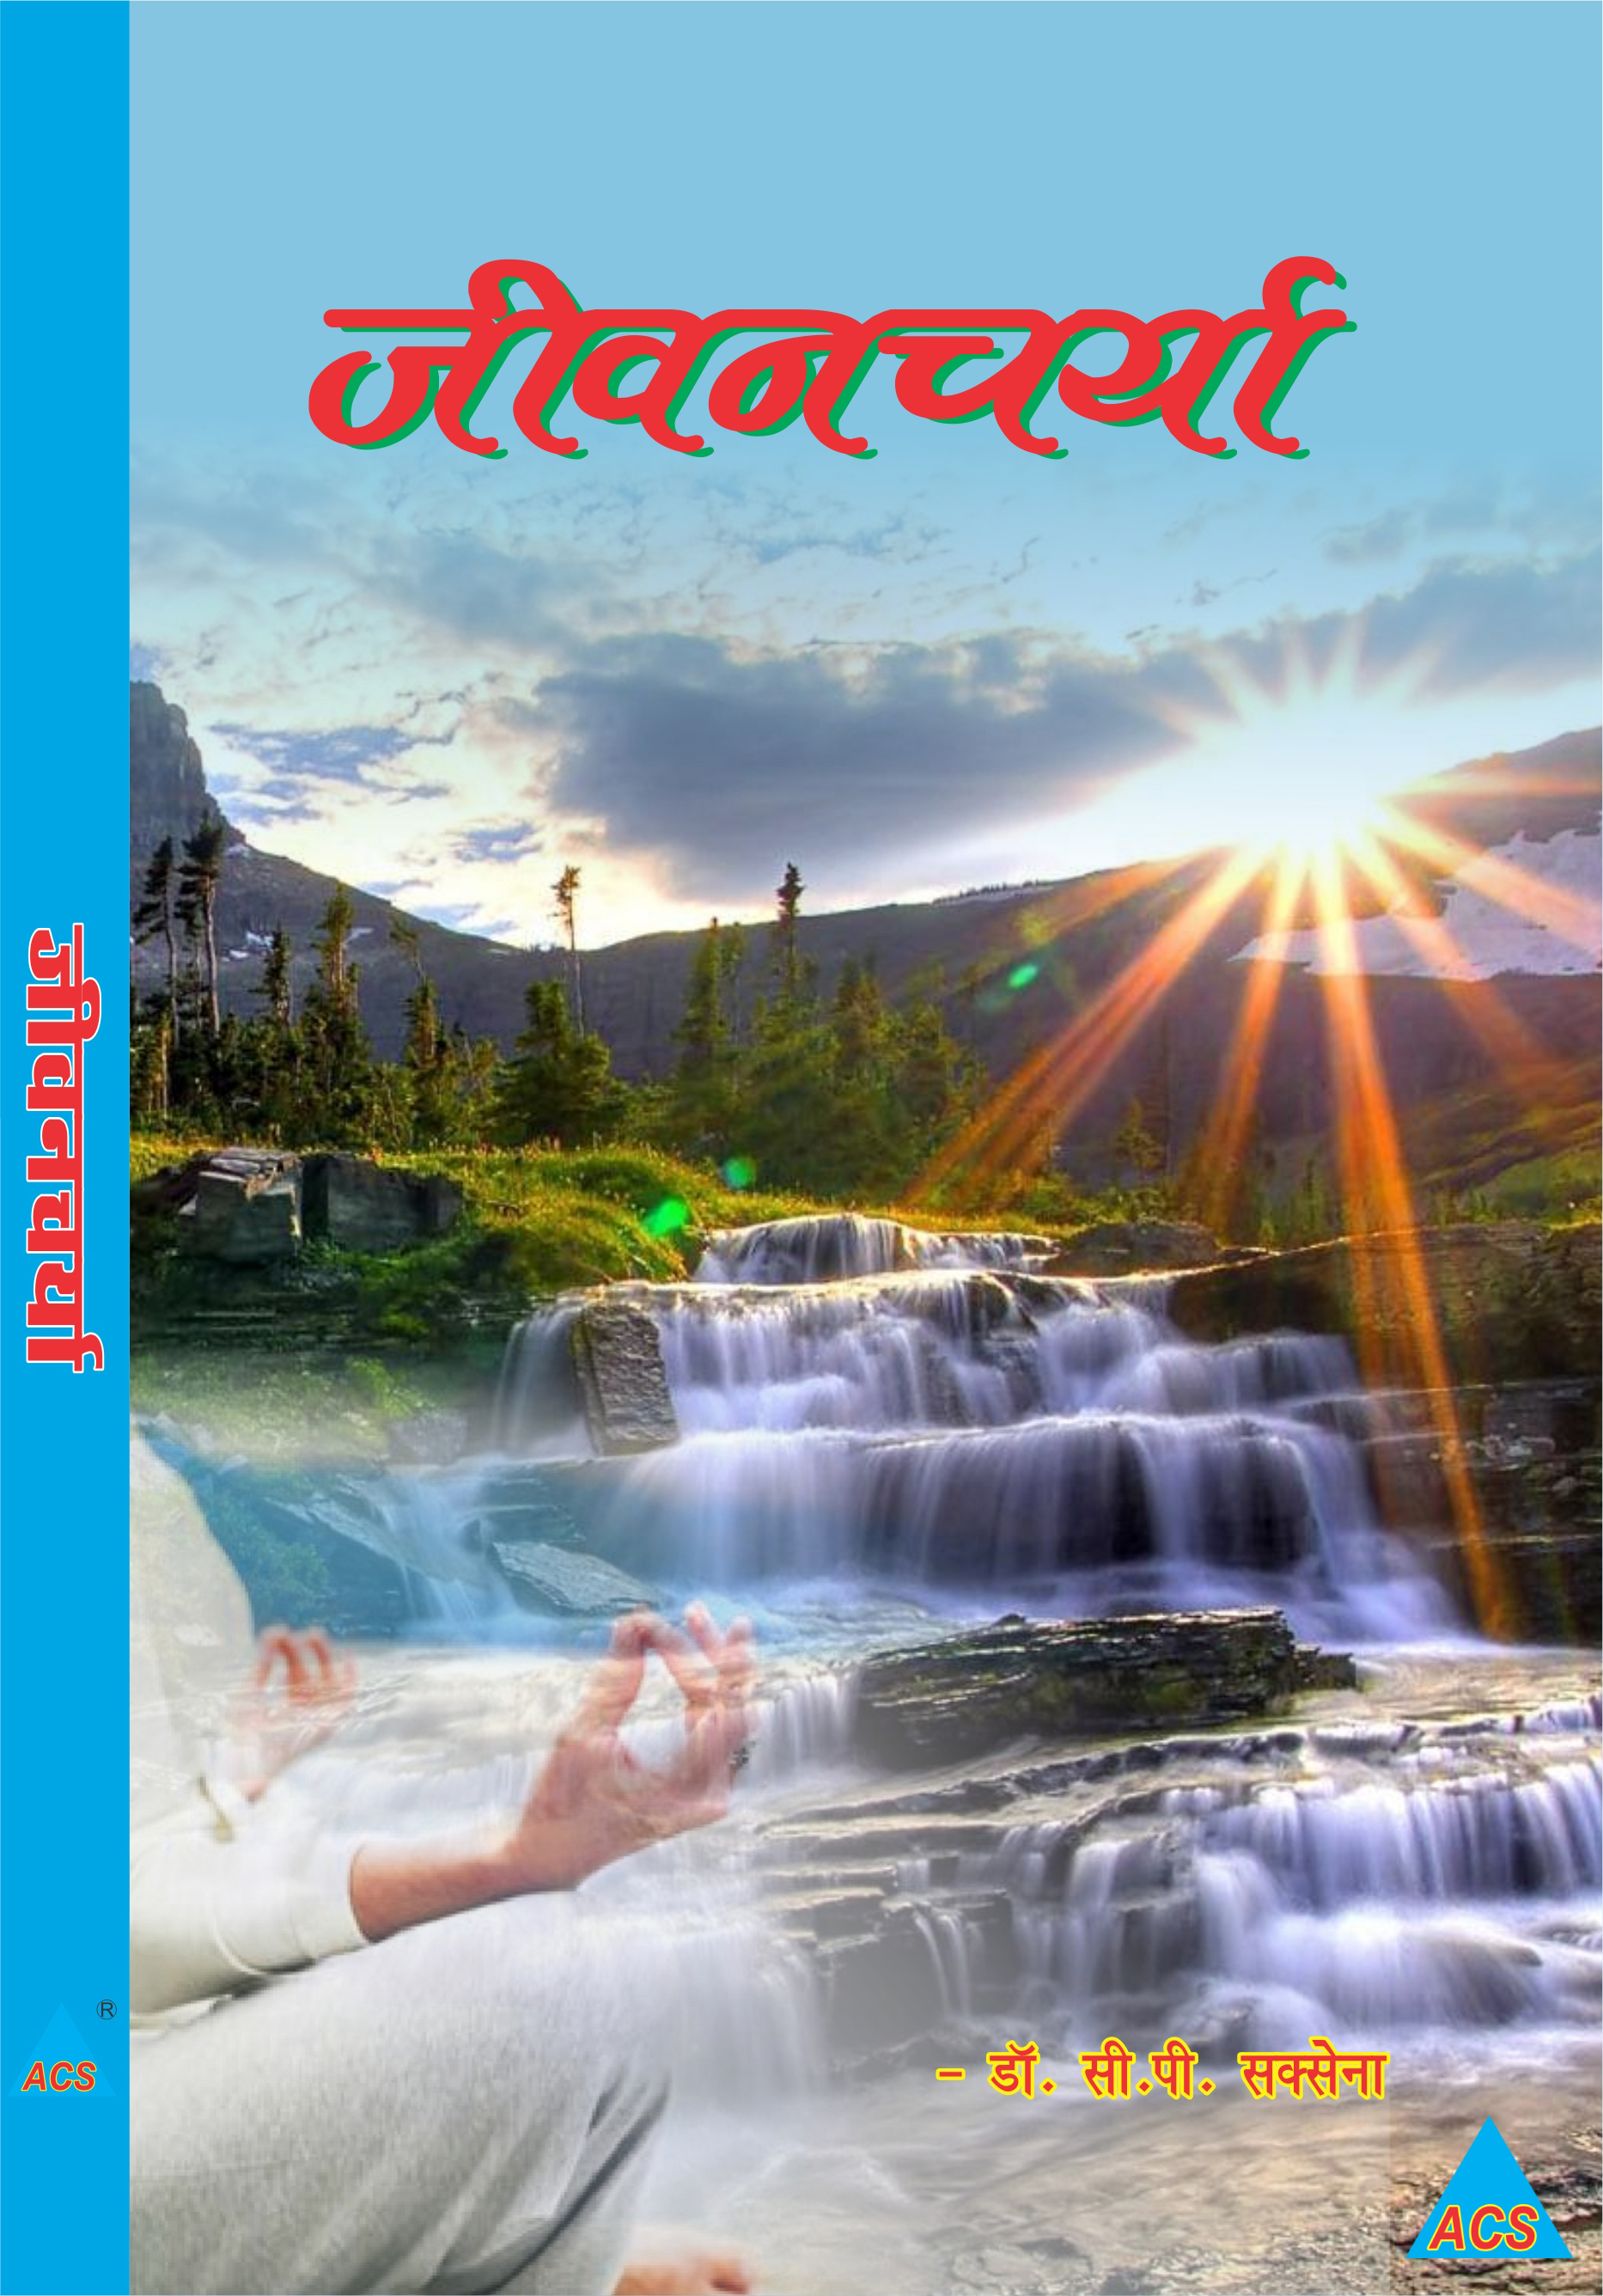 ACS Jeevan Charya - Dr. C.P. Saxena  Book -Hindi 